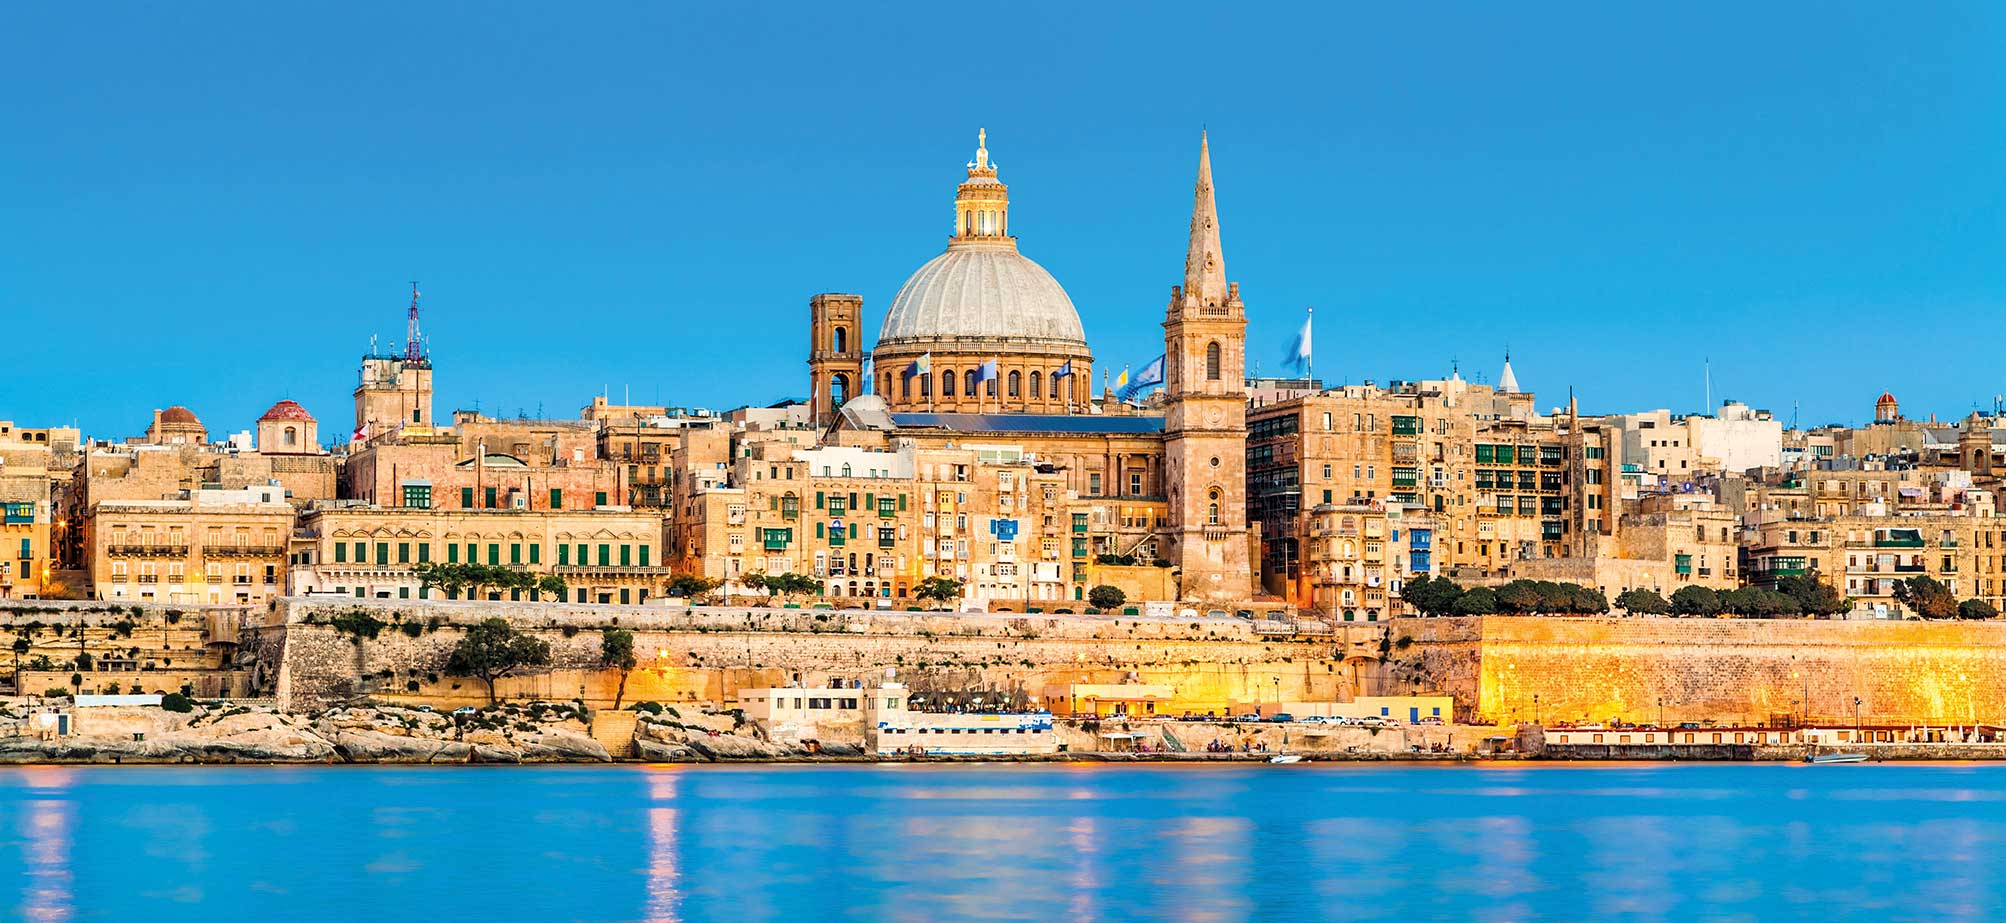 visit malta heritage